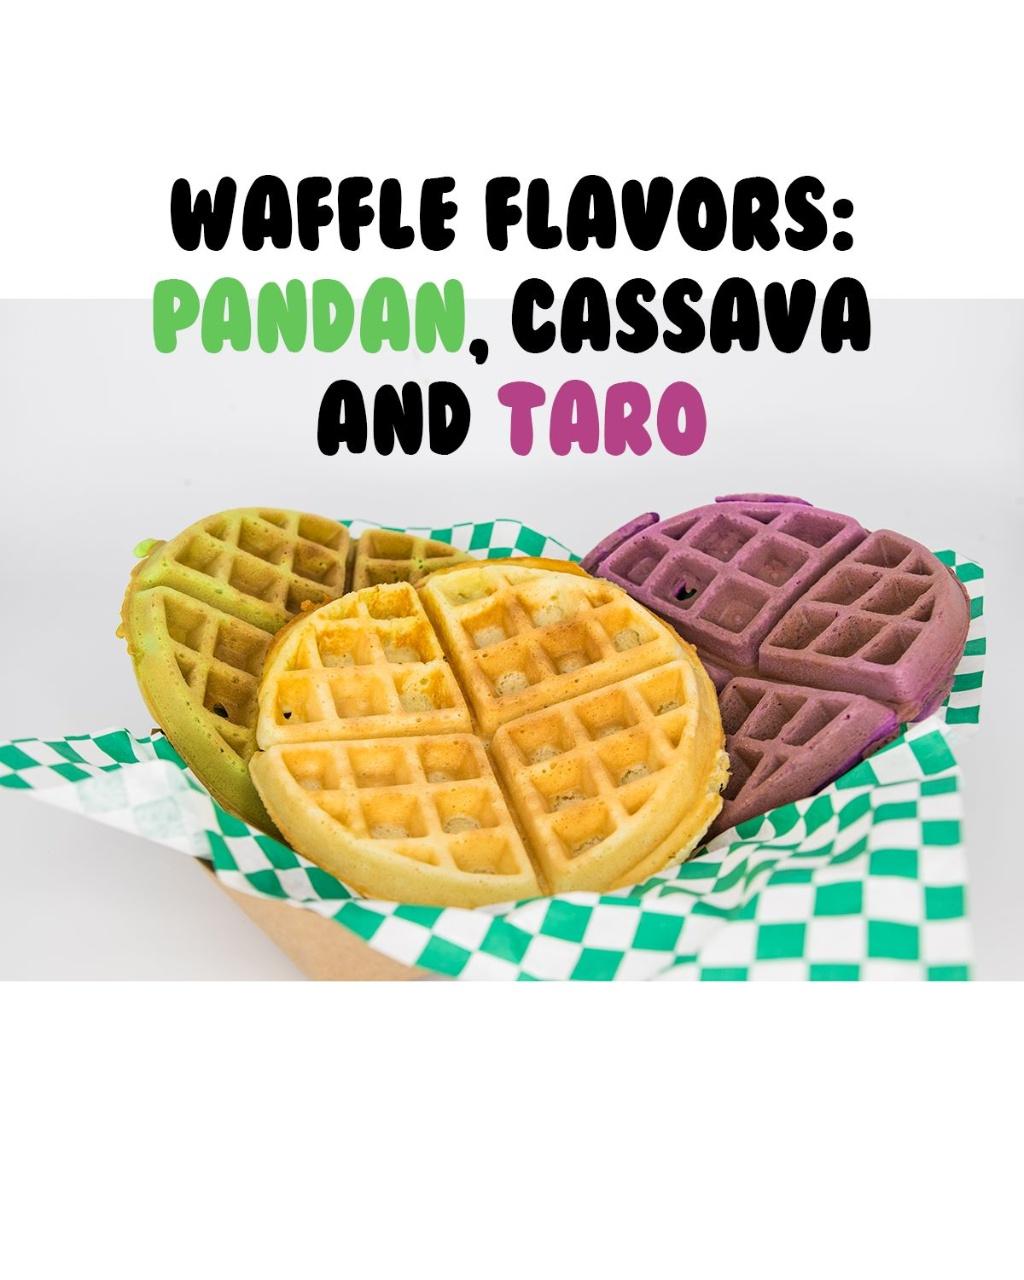 Image for Pandon Waffle.